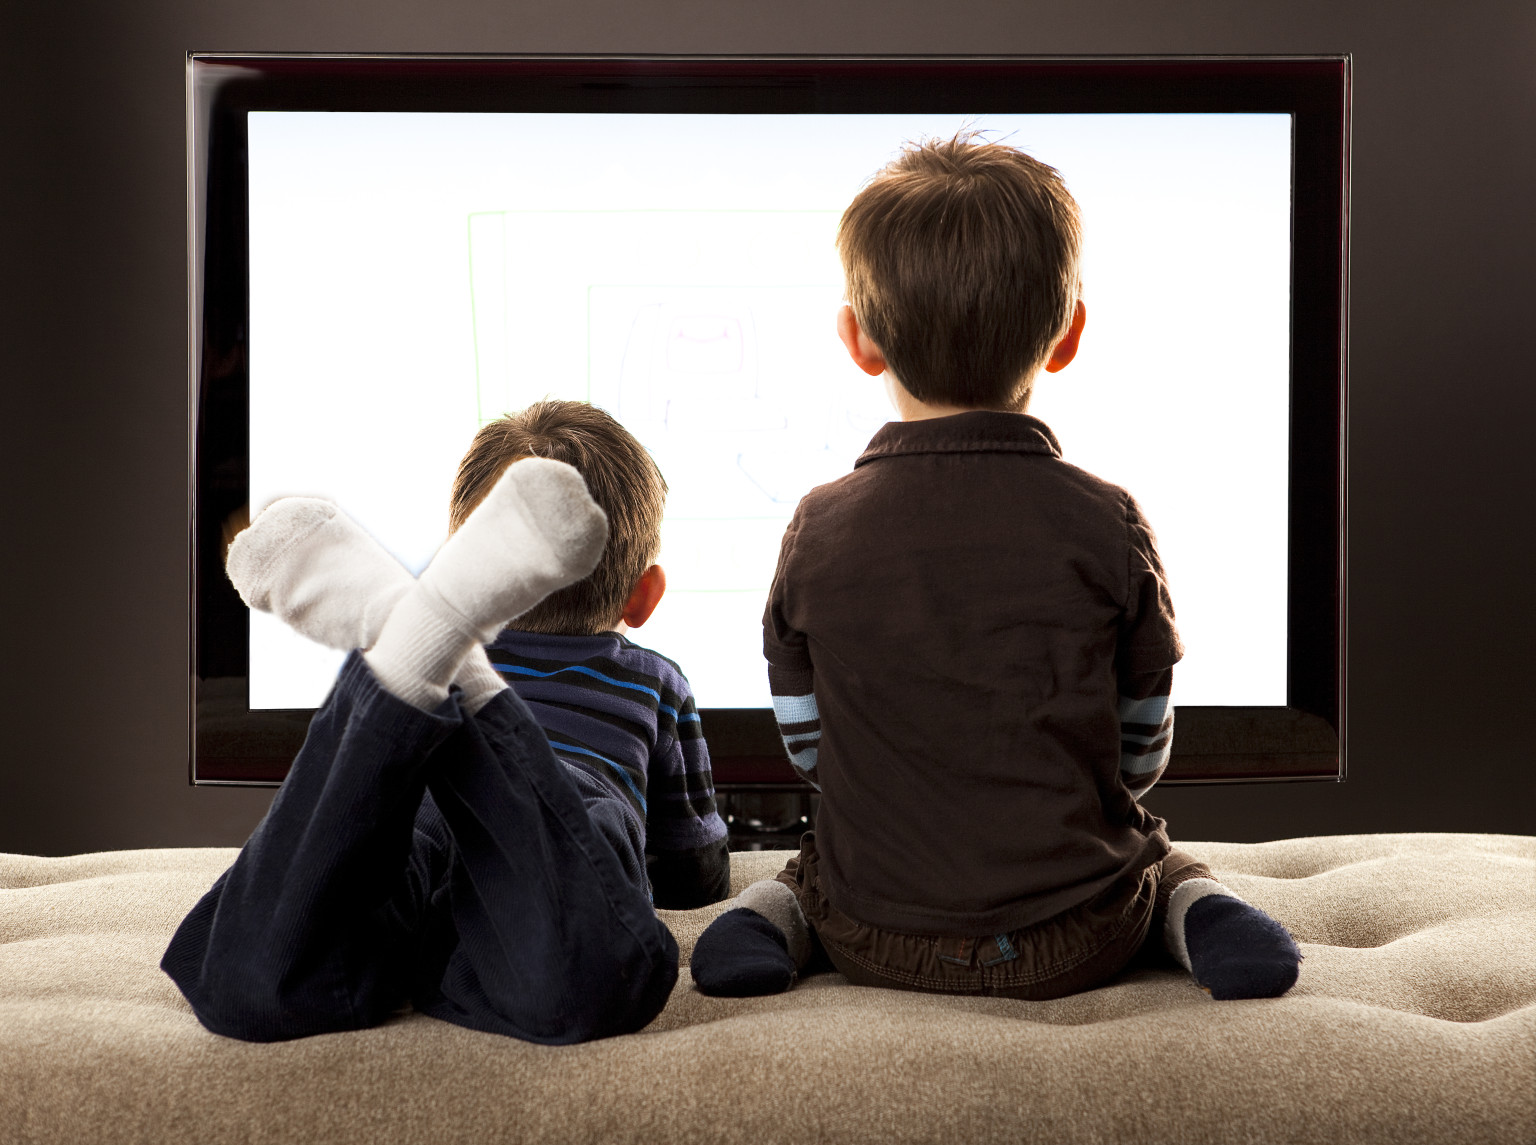 Έρευνα: Τι παθαίνουν τα παιδιά που κάθονται συνέχεια στην τηλεόραση και τον υπολογιστή